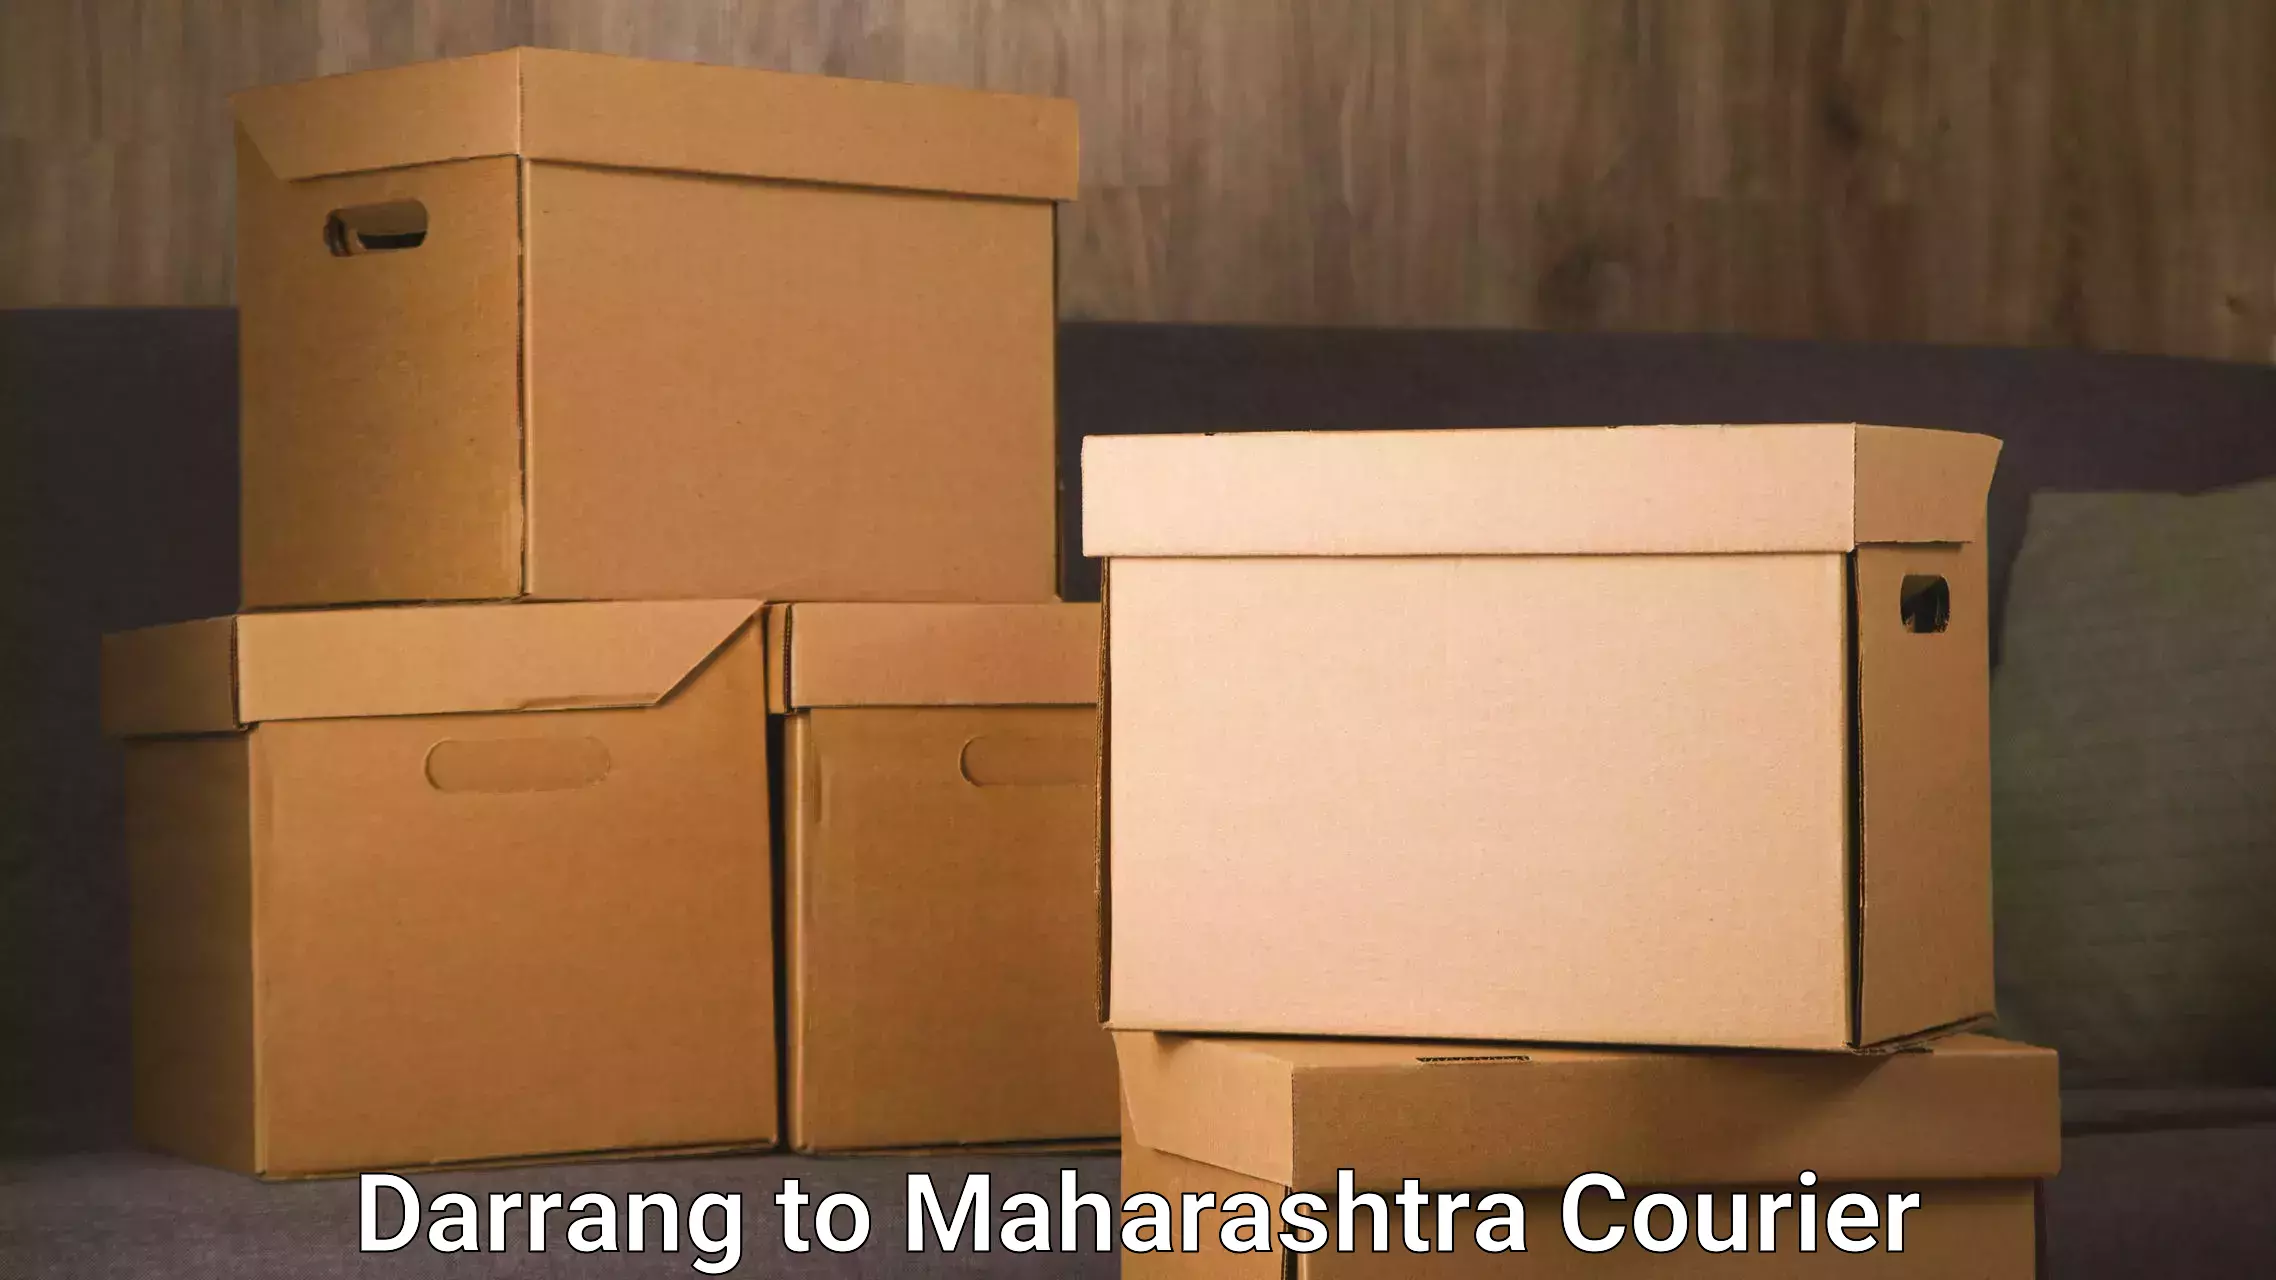 High-efficiency logistics Darrang to Maharashtra